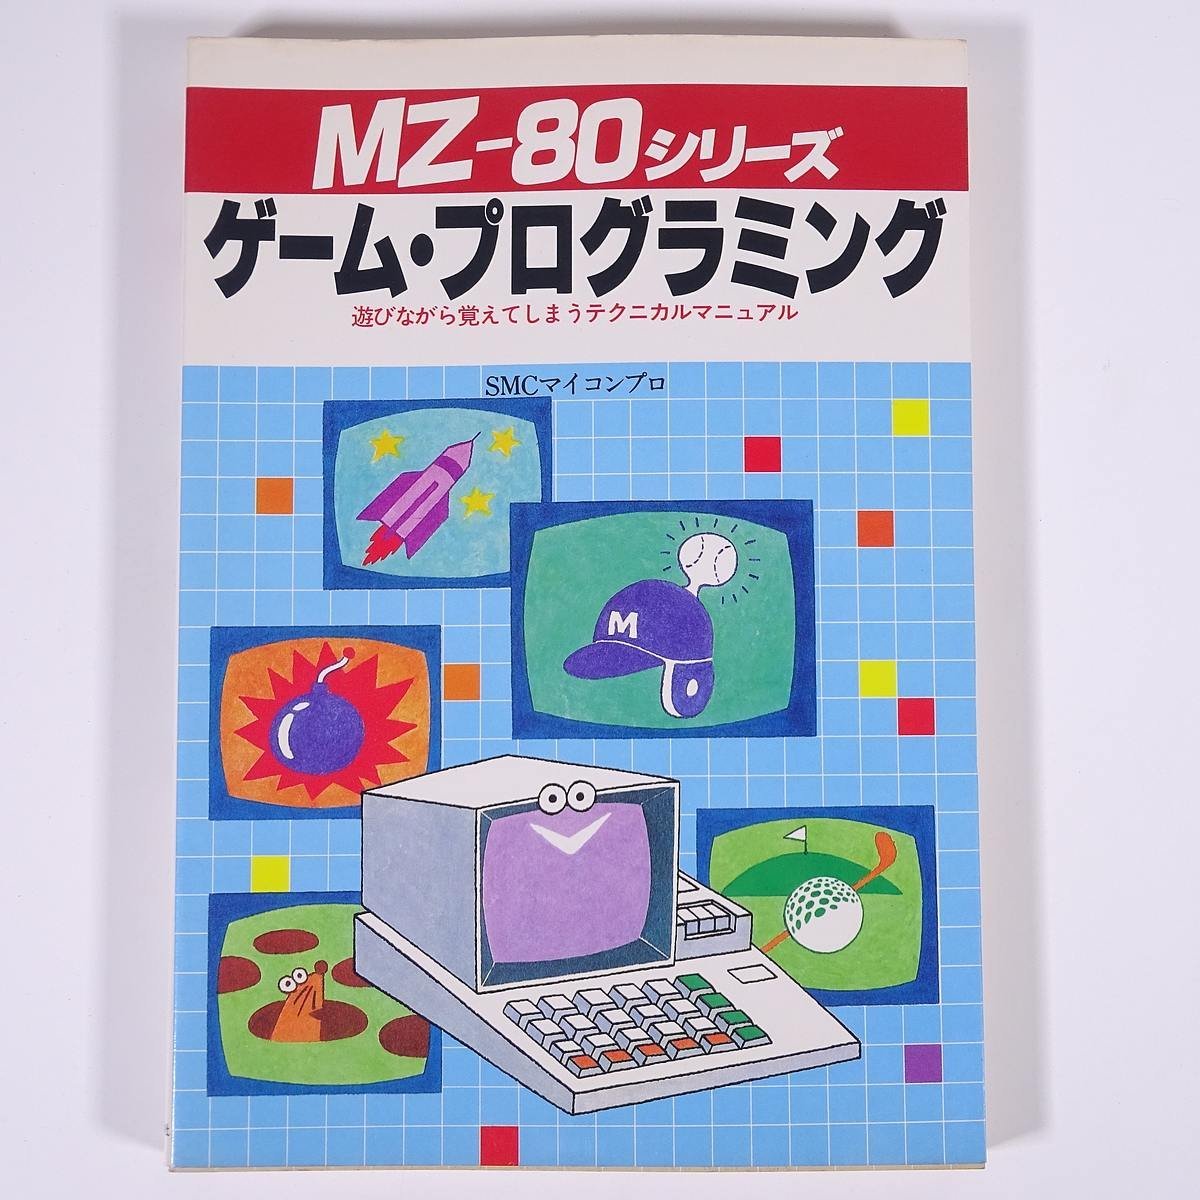 MZ-80シリーズ ゲーム・プログラミング SMCマイコンプロ 新星出版社 1982 単行本 PC パソコン マイコン プログラミング_画像1